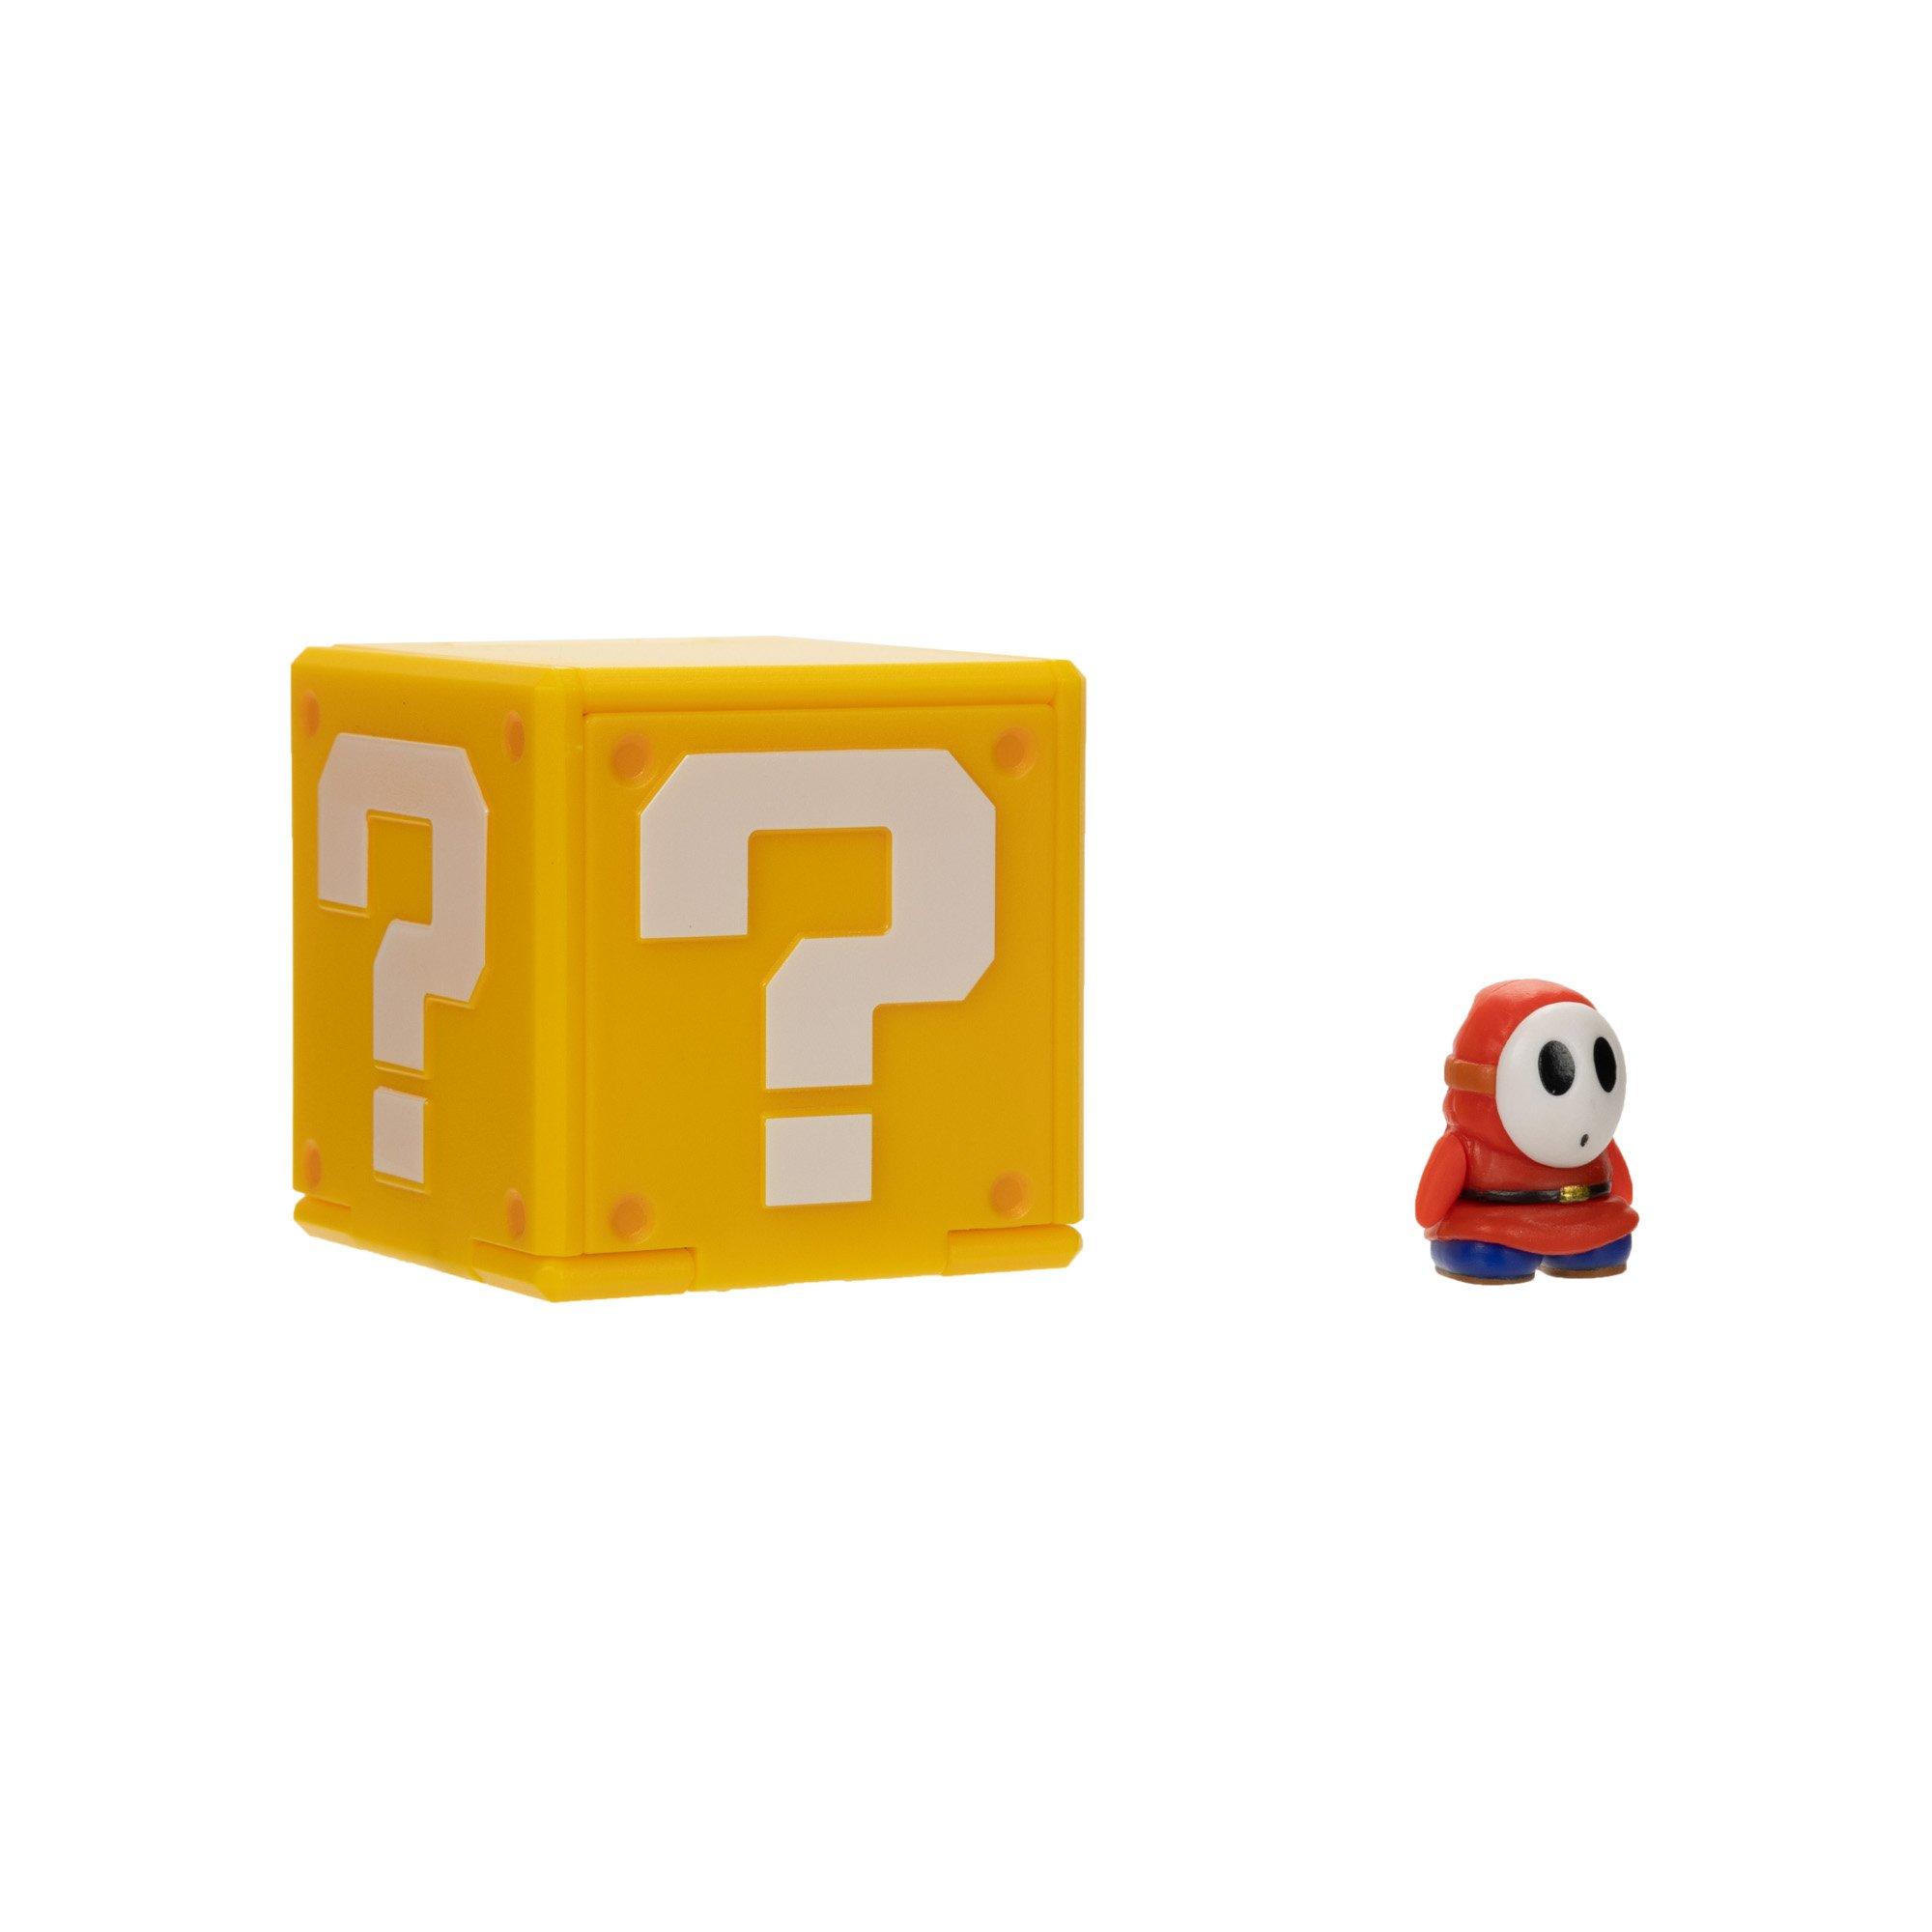 Lampara Super Mario Bros Question Block